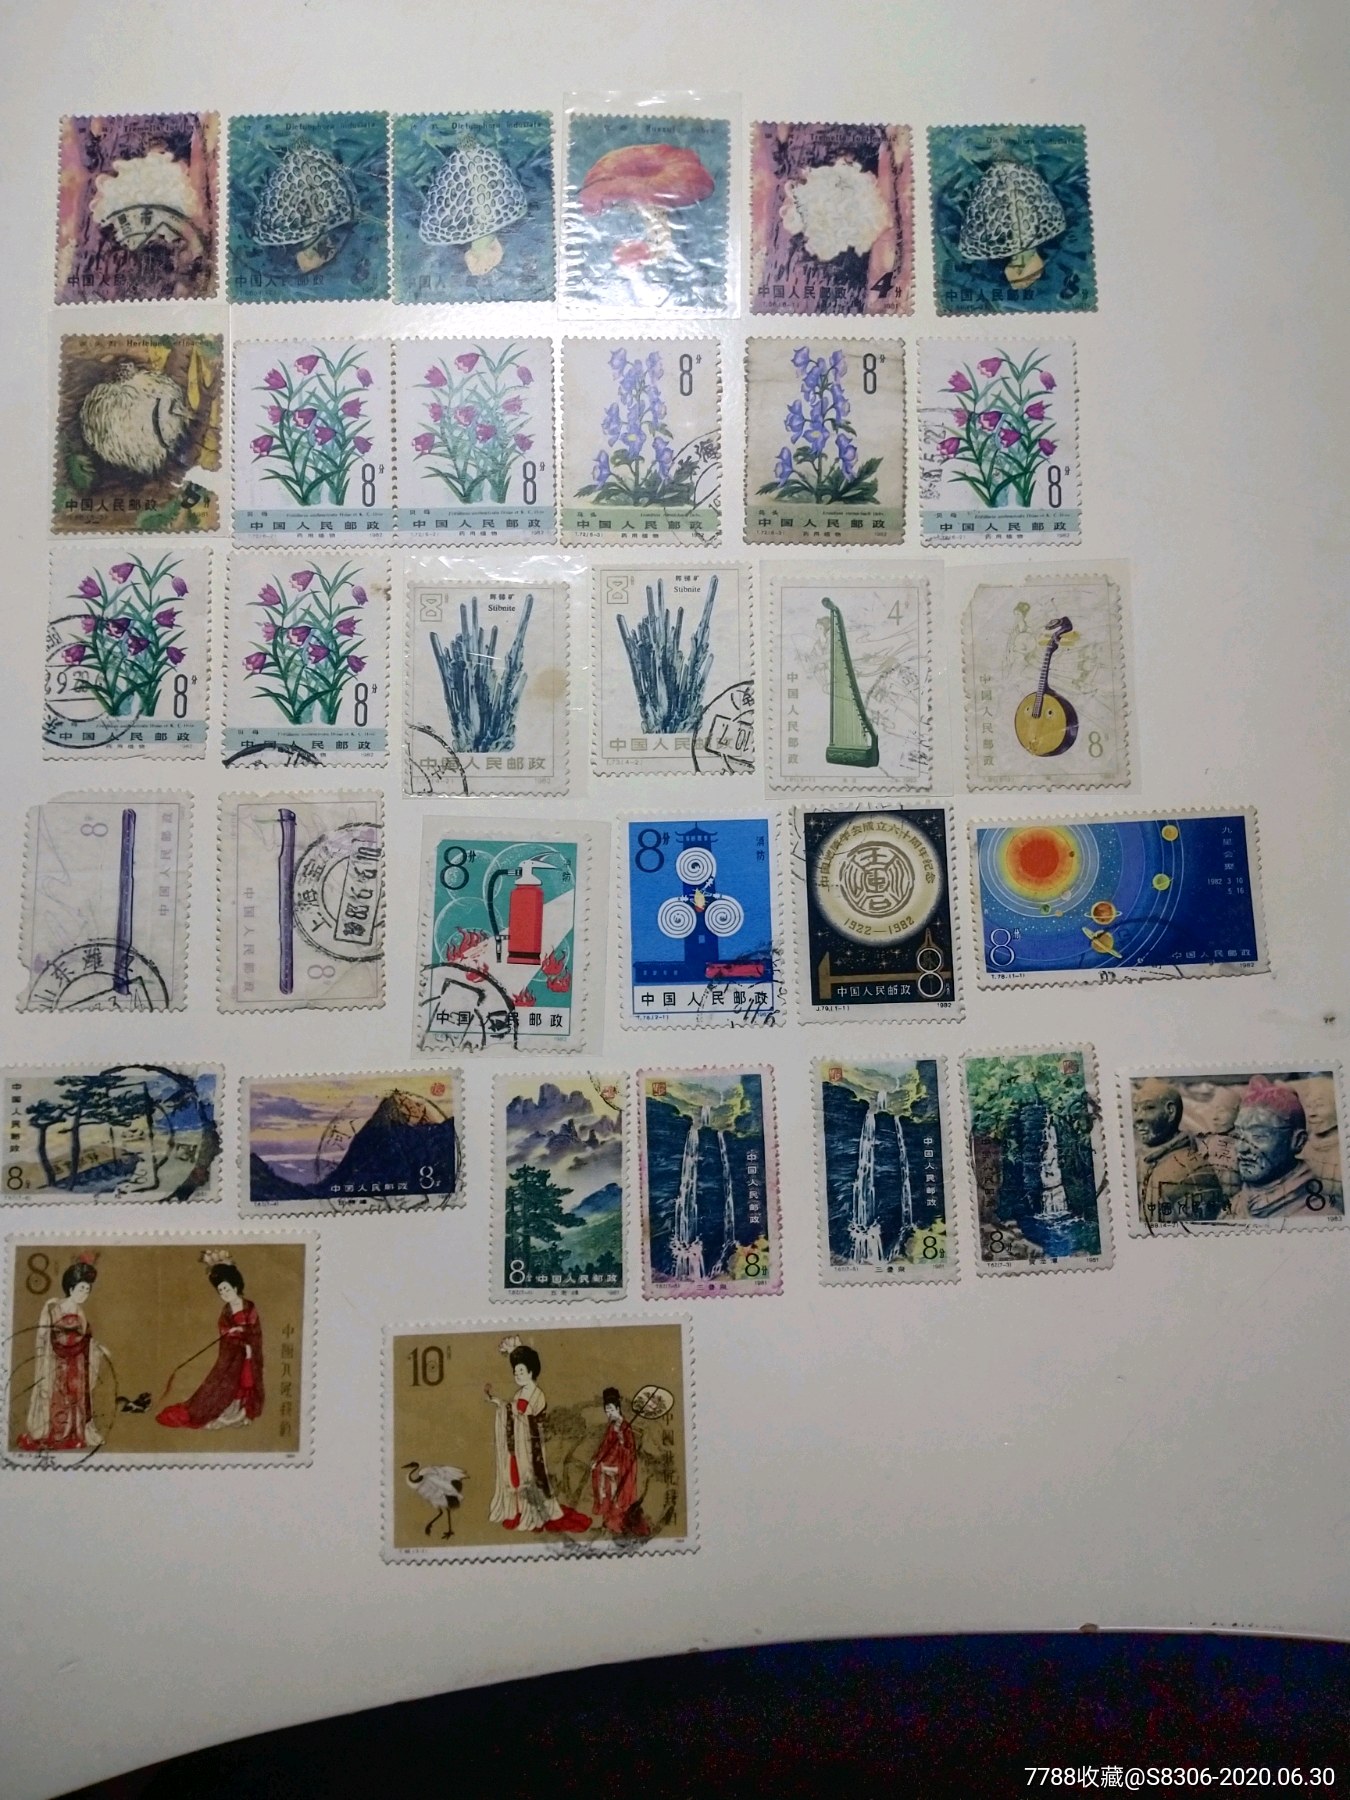 八十年代信销票33枚合拍,新中国邮票,t字邮票,八十年代(20世纪),杂